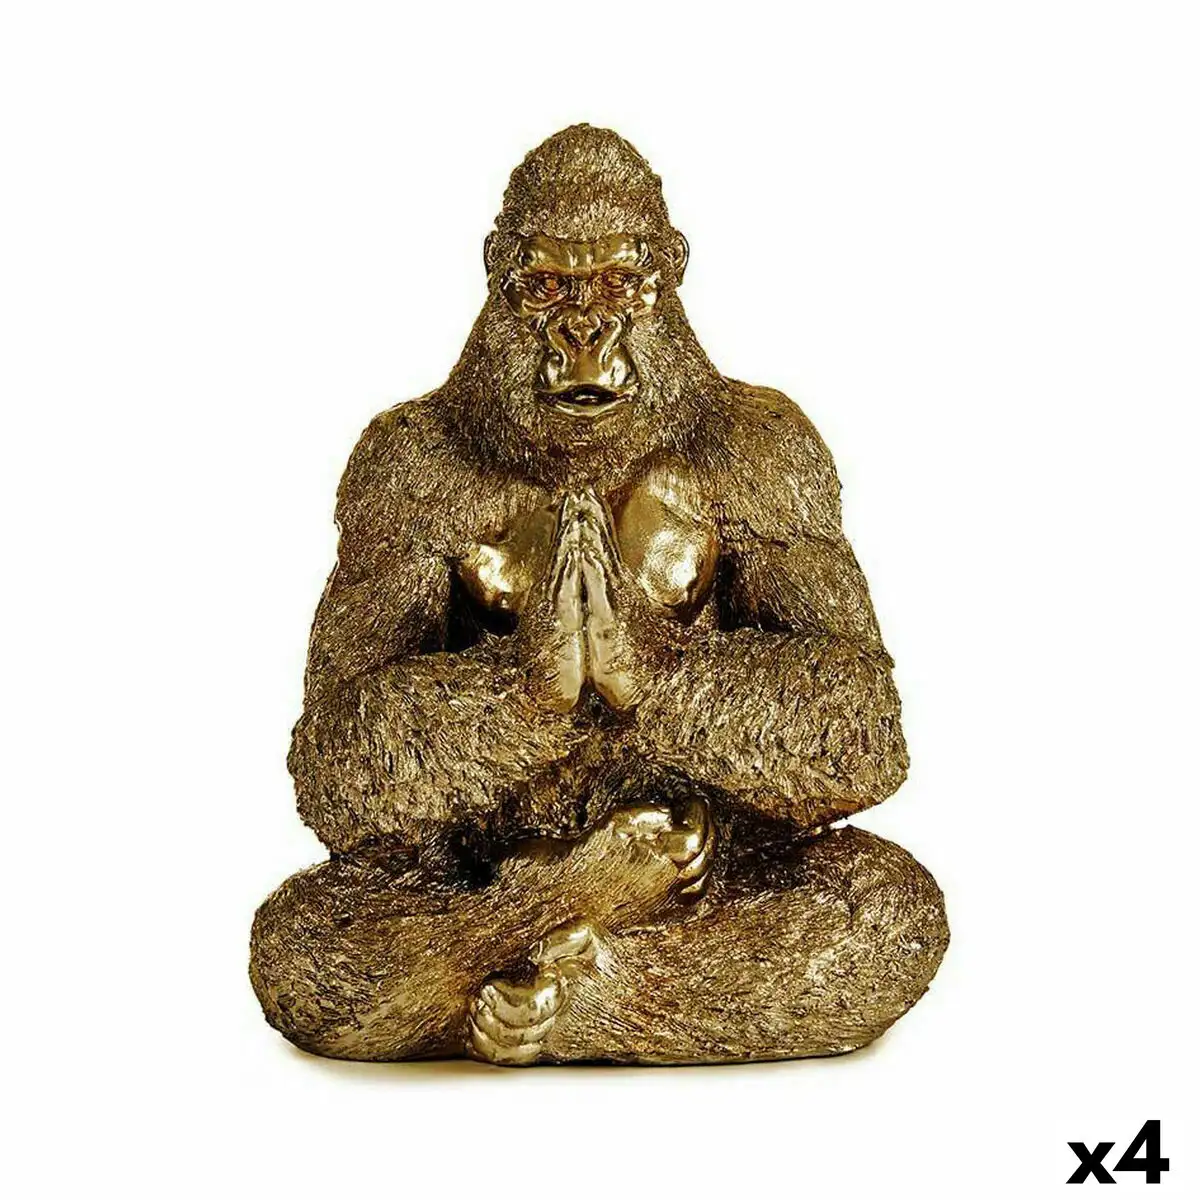 Figurine decorative yoga gorille dore 16 x 27 5 x 22 cm 4 unites _9762. Bienvenue sur DIAYTAR SENEGAL - Votre Destination Shopping à la Sénégalaise. Explorez notre boutique en ligne et découvrez une gamme variée de produits qui capturent l'esprit du Sénégal.